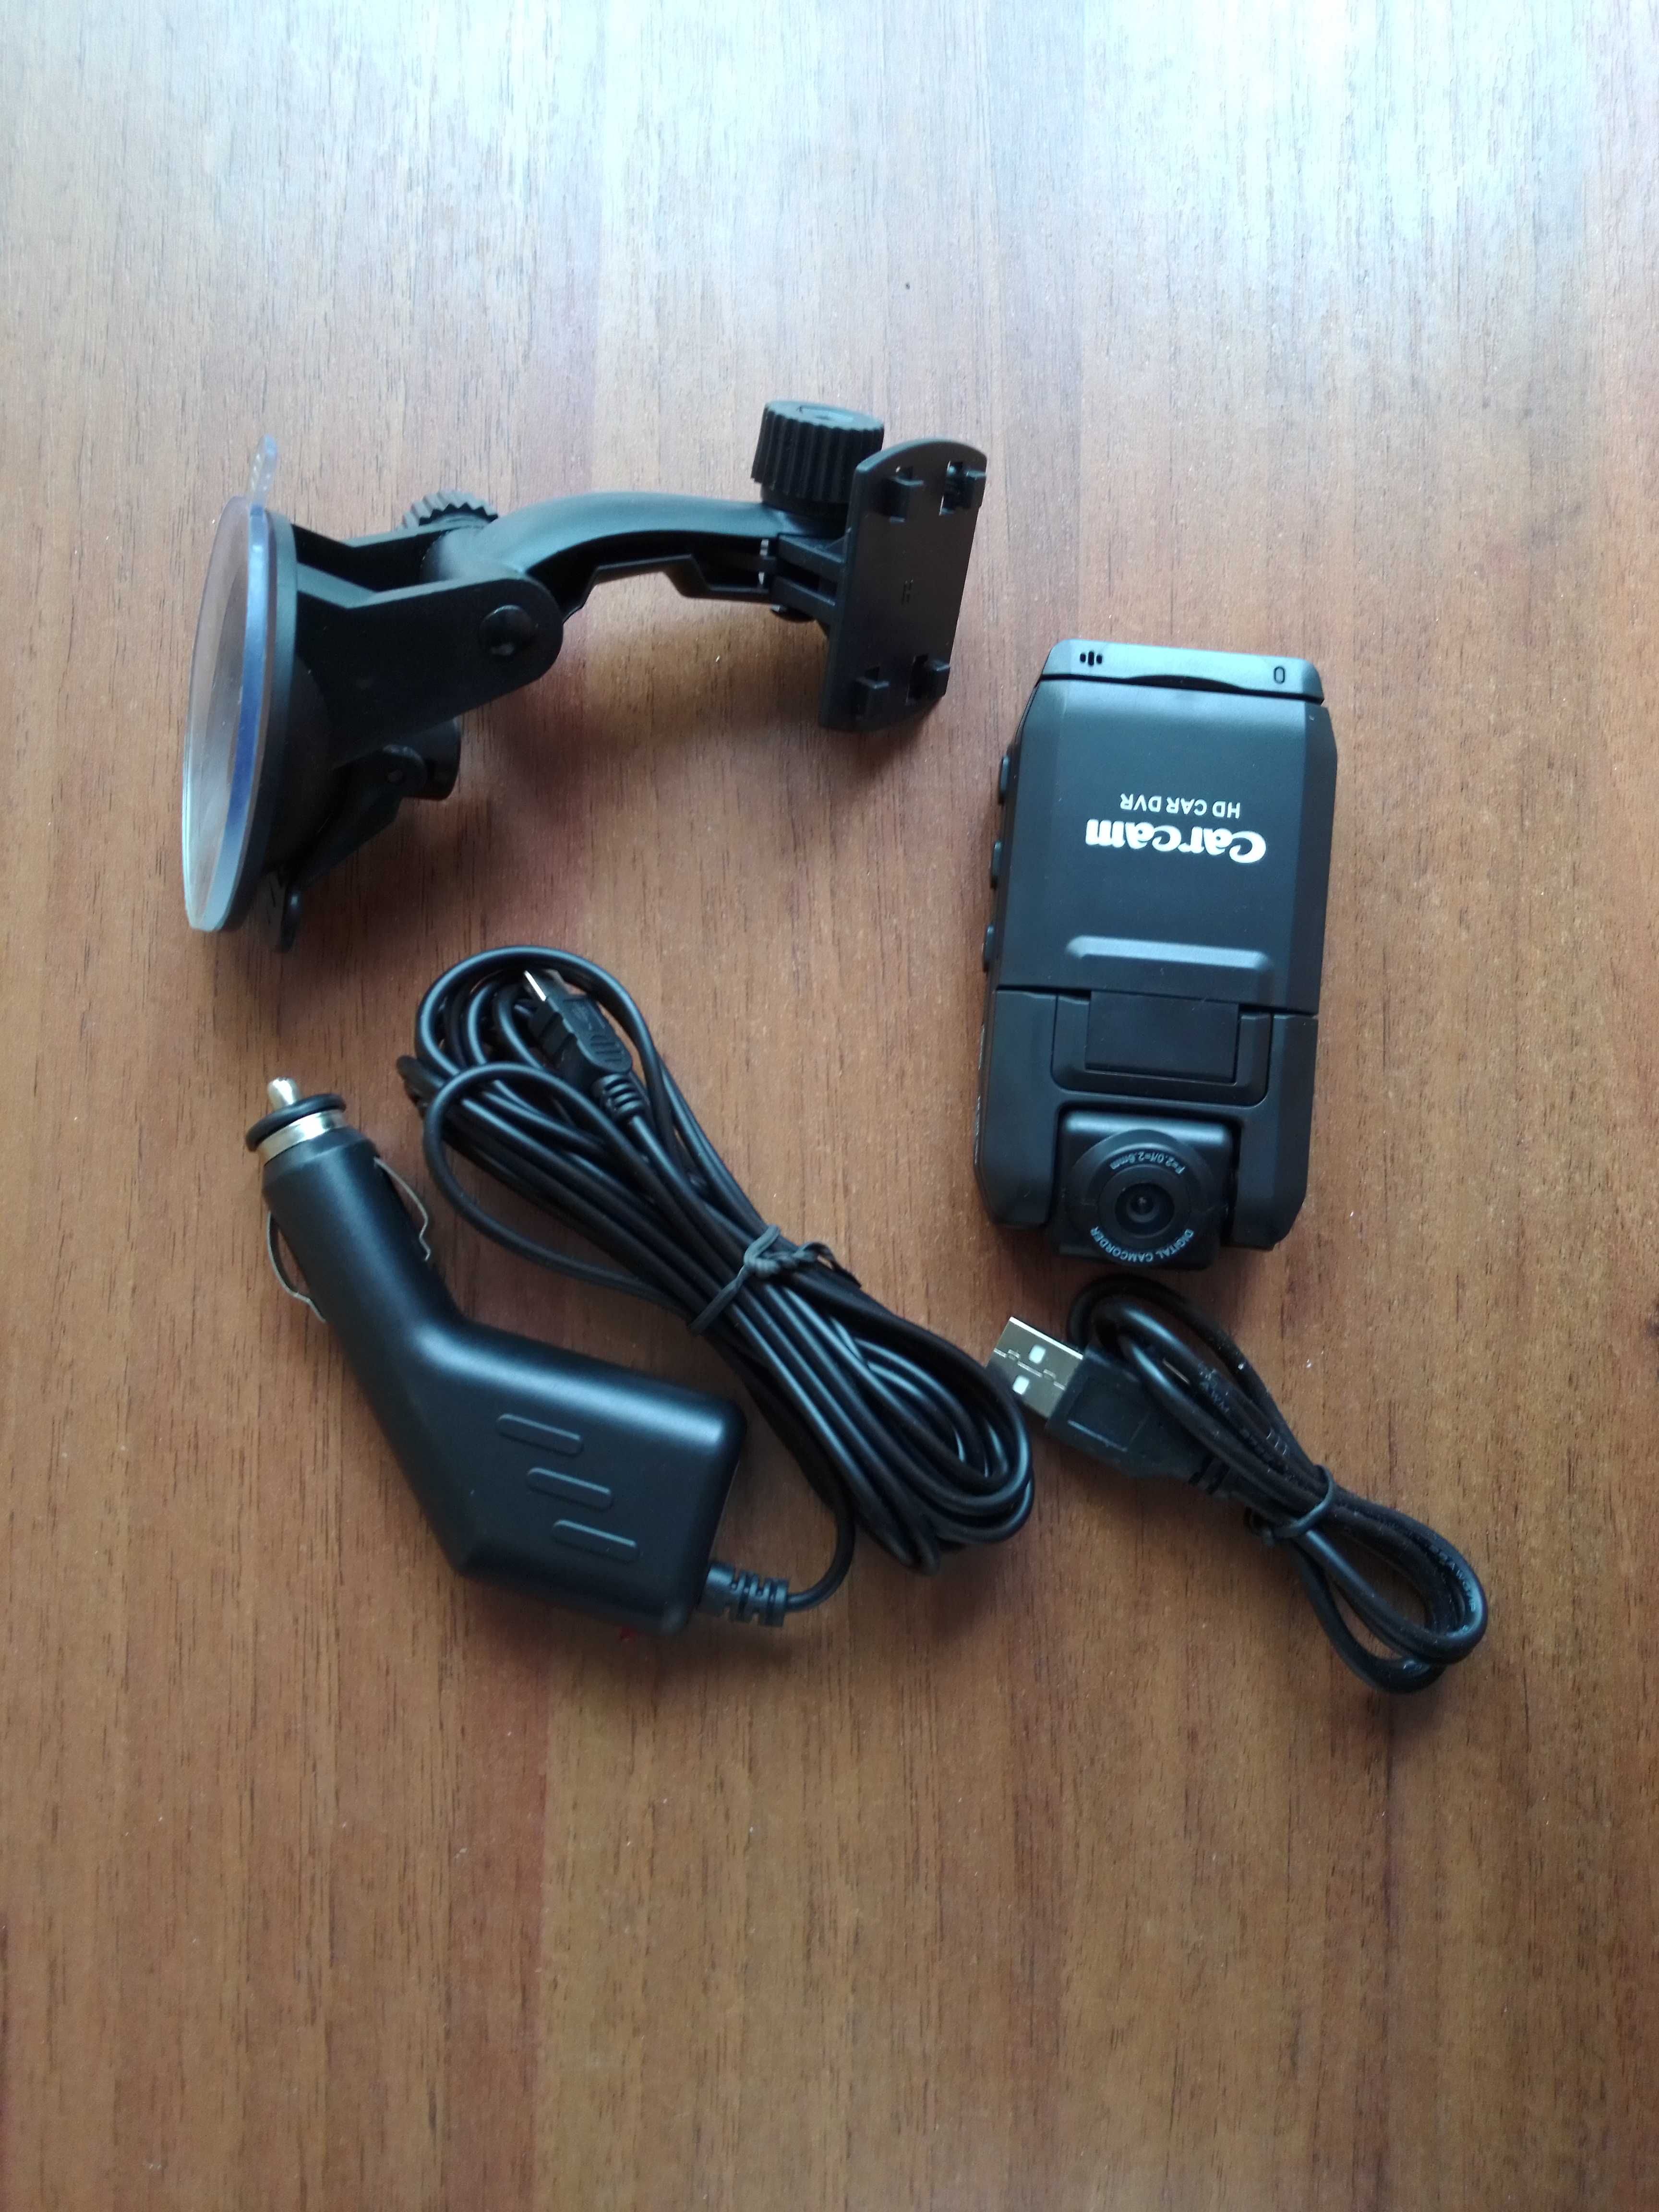 Автомобильный видеорегистратор Carcam P5000